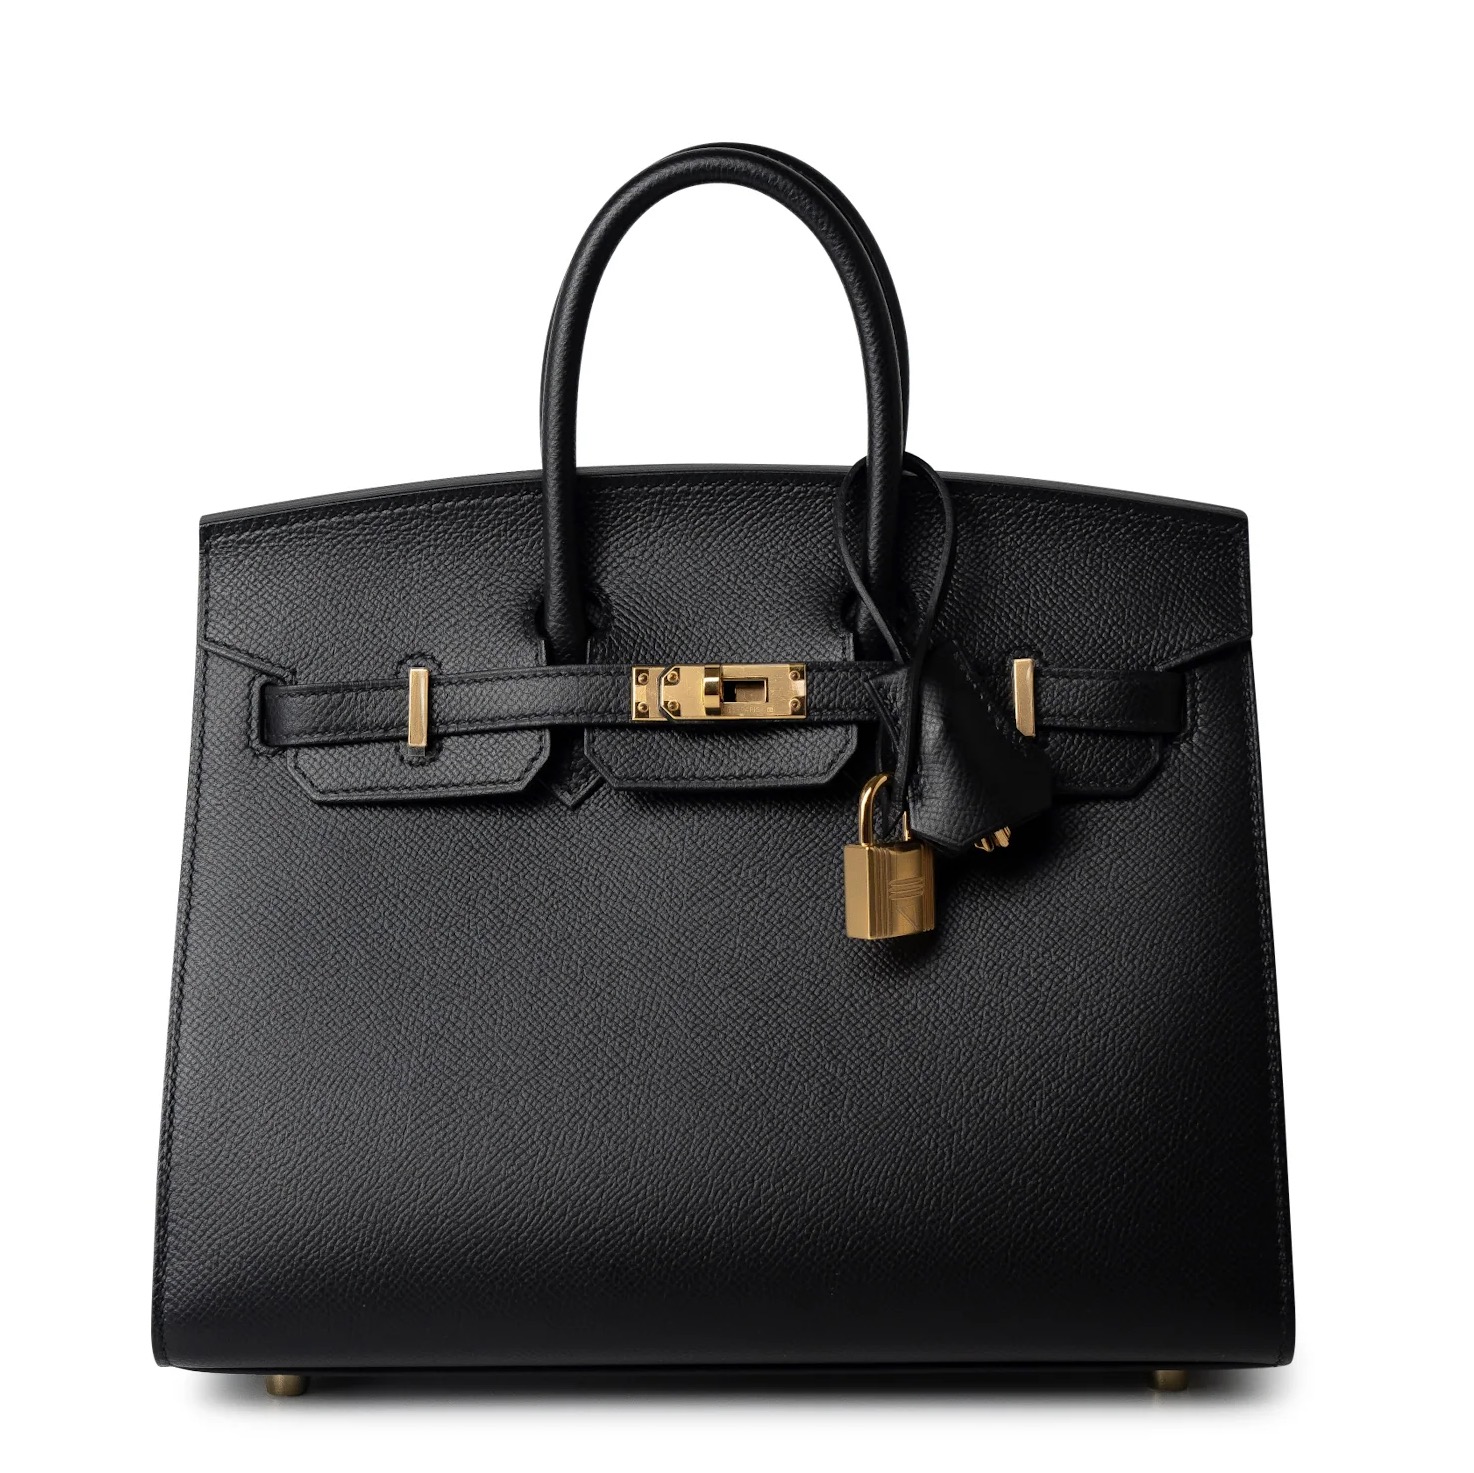 Hermès Bride-a-Brac Review: Handbag or not?